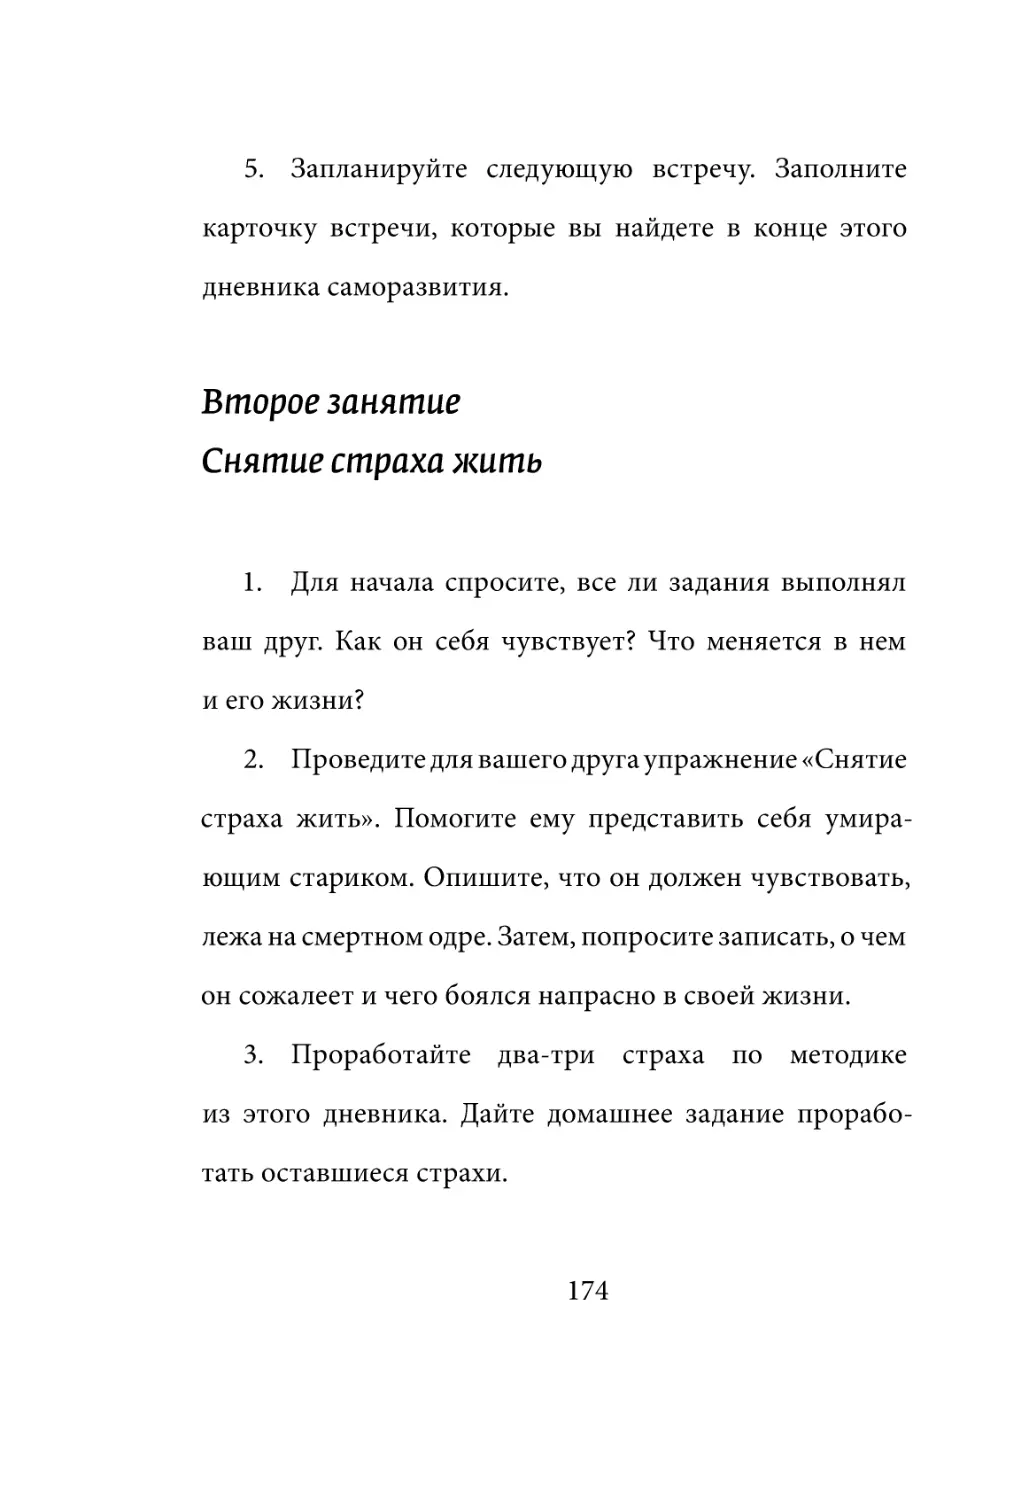 Sergey_Filippov_Dnevnik_samorazvitia_Evolyutsia_Vnutrennego_Sostoyania_174.pdf (p.174)